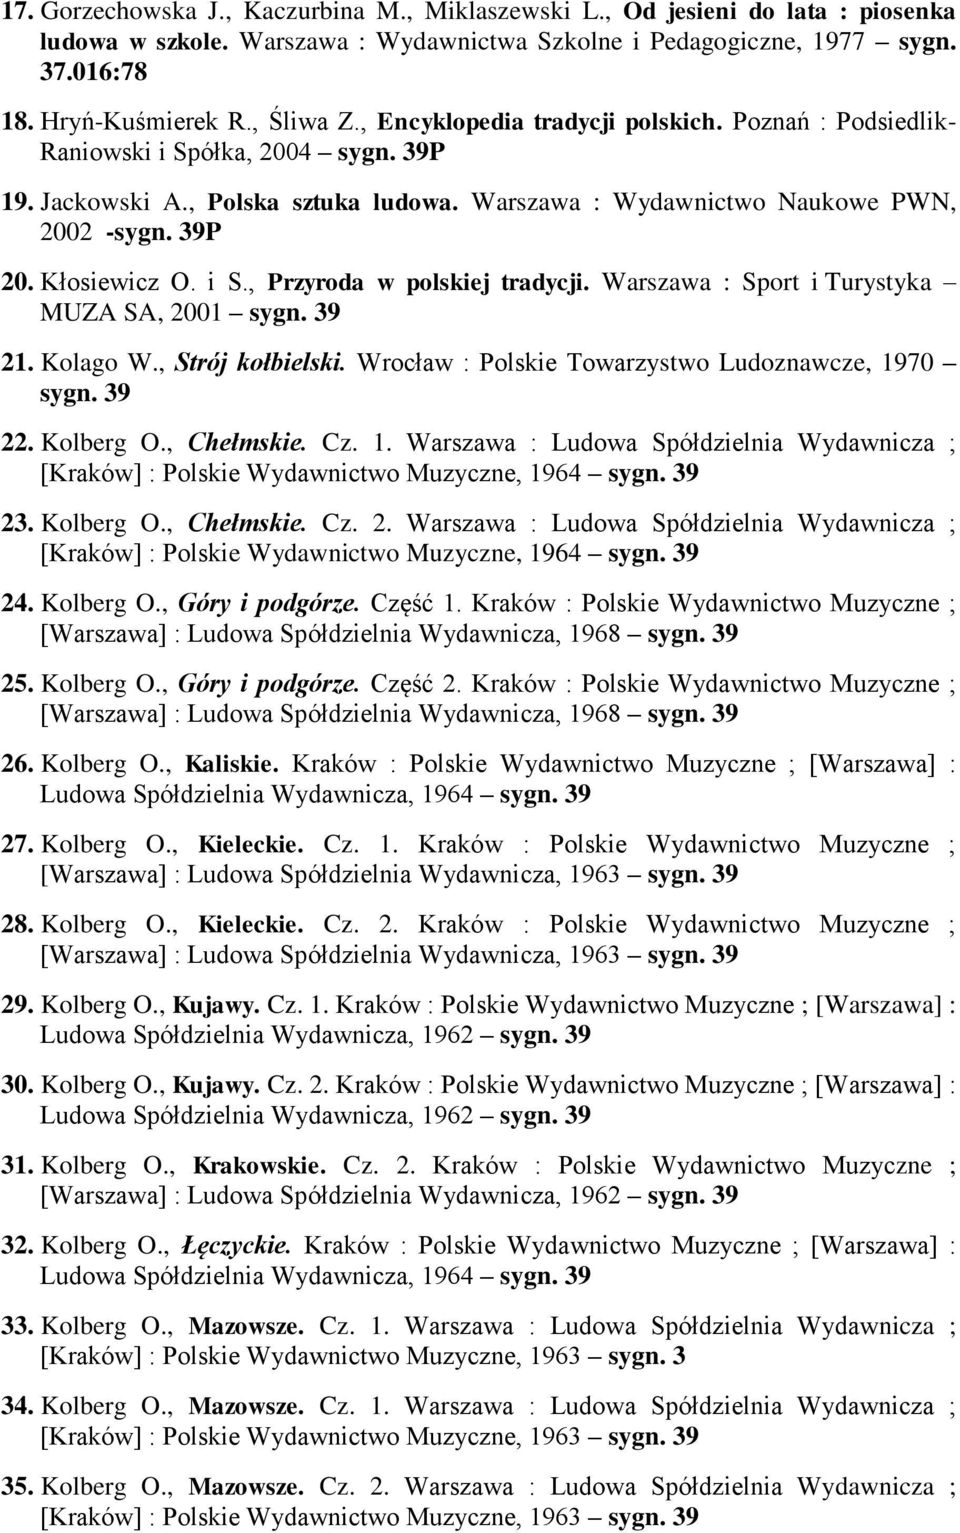 Warszawa : Sport i Turystyka MUZA SA, 2001 21. Kolago W., Strój kołbielski. Wrocław : Polskie Towarzystwo Ludoznawcze, 19